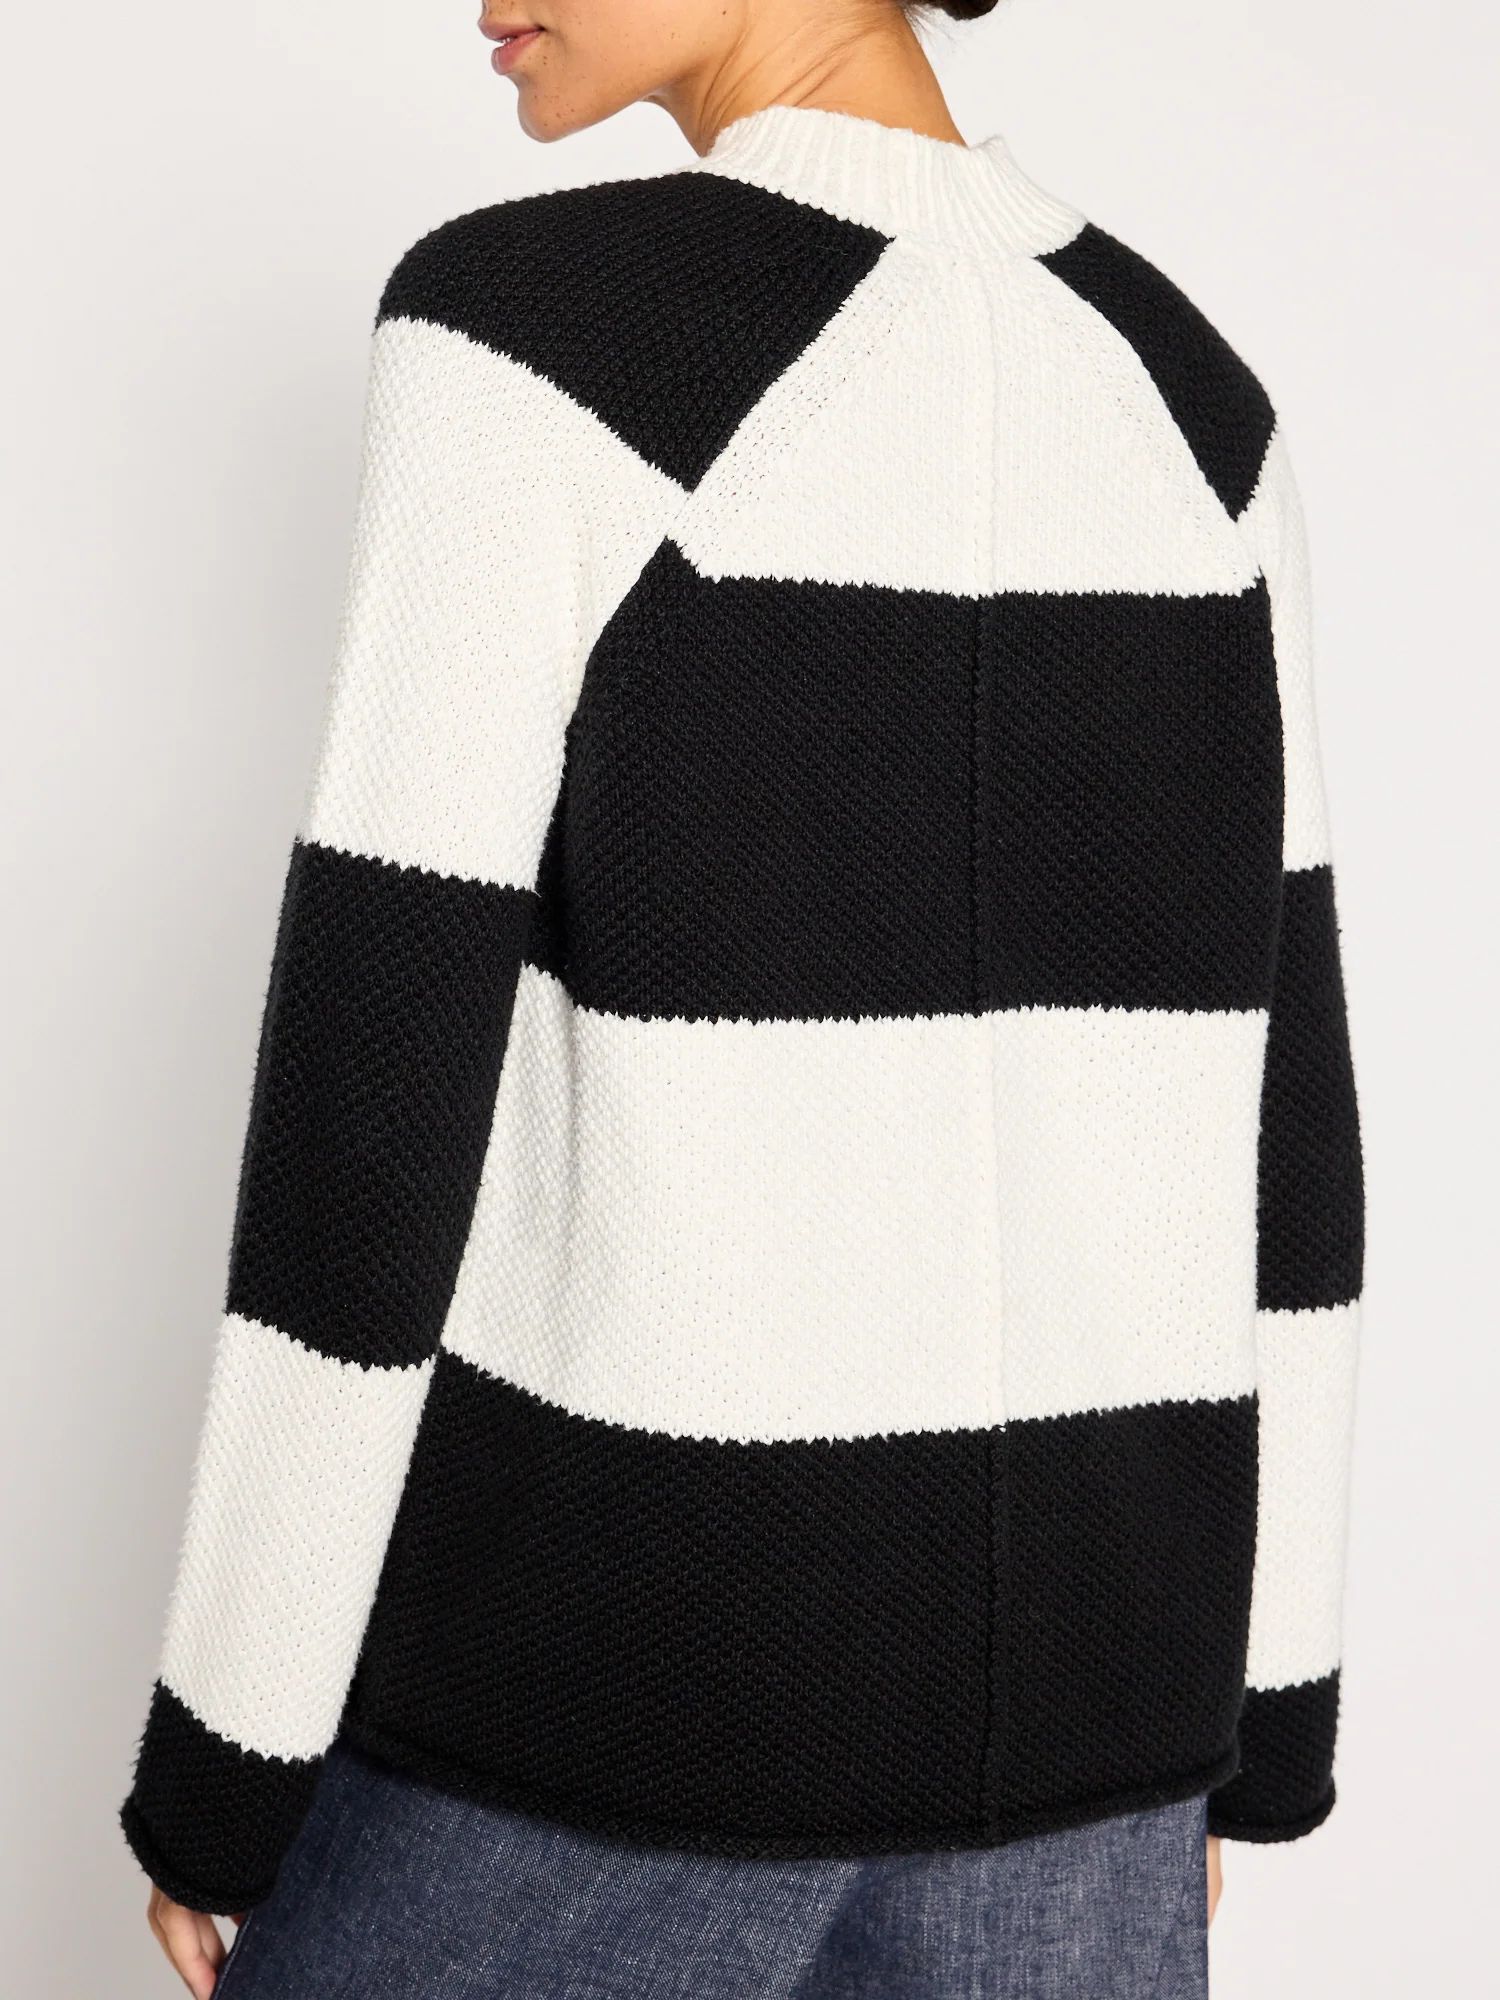 Brochu Walker | Women's Marco Stripe Sweater in Salt White Stripe | Brochu Walker